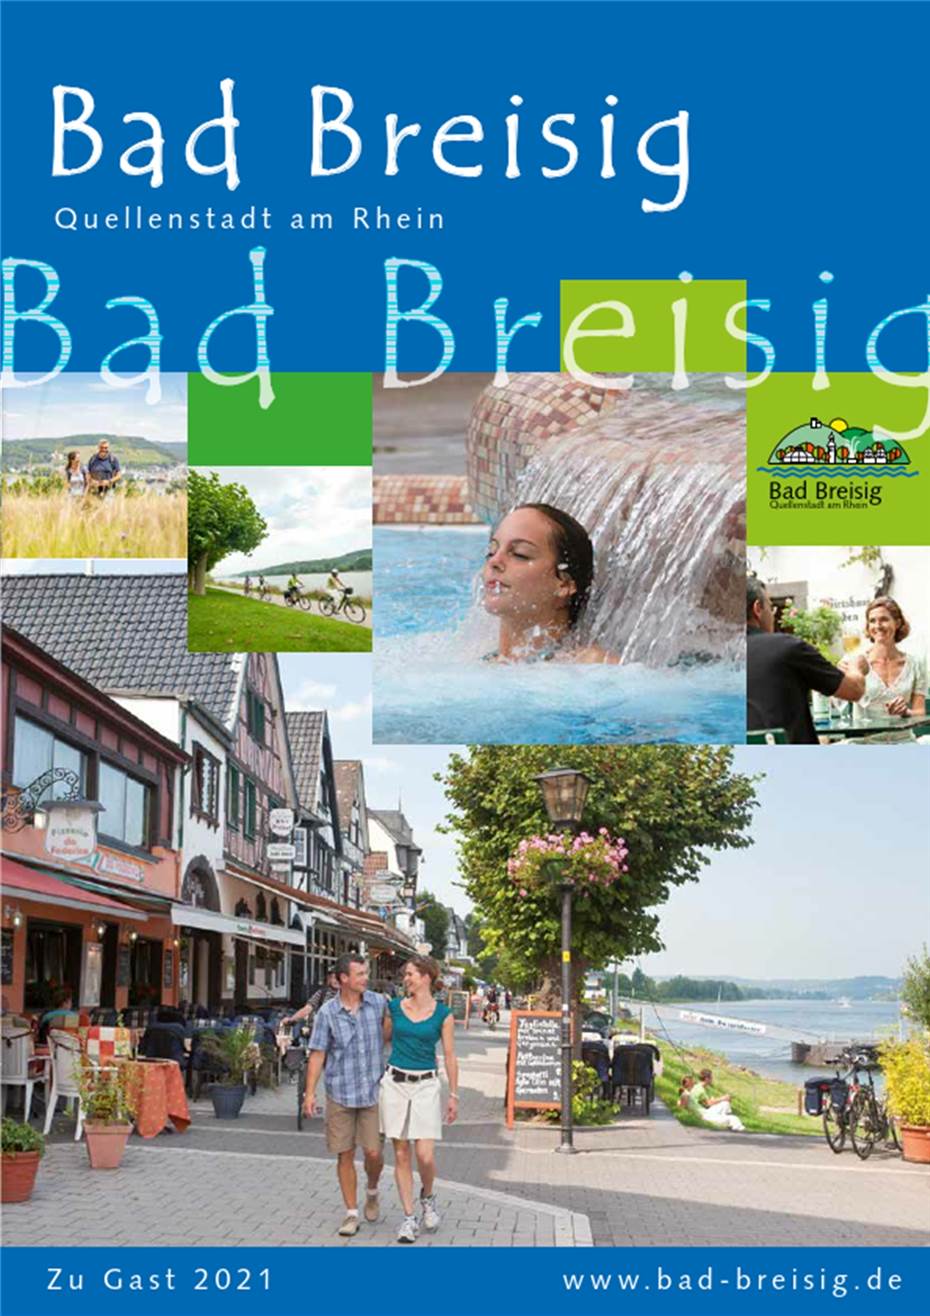 Das Gastgeberverzeichnis
Bad Breisig für das Jahr 2021 ist da